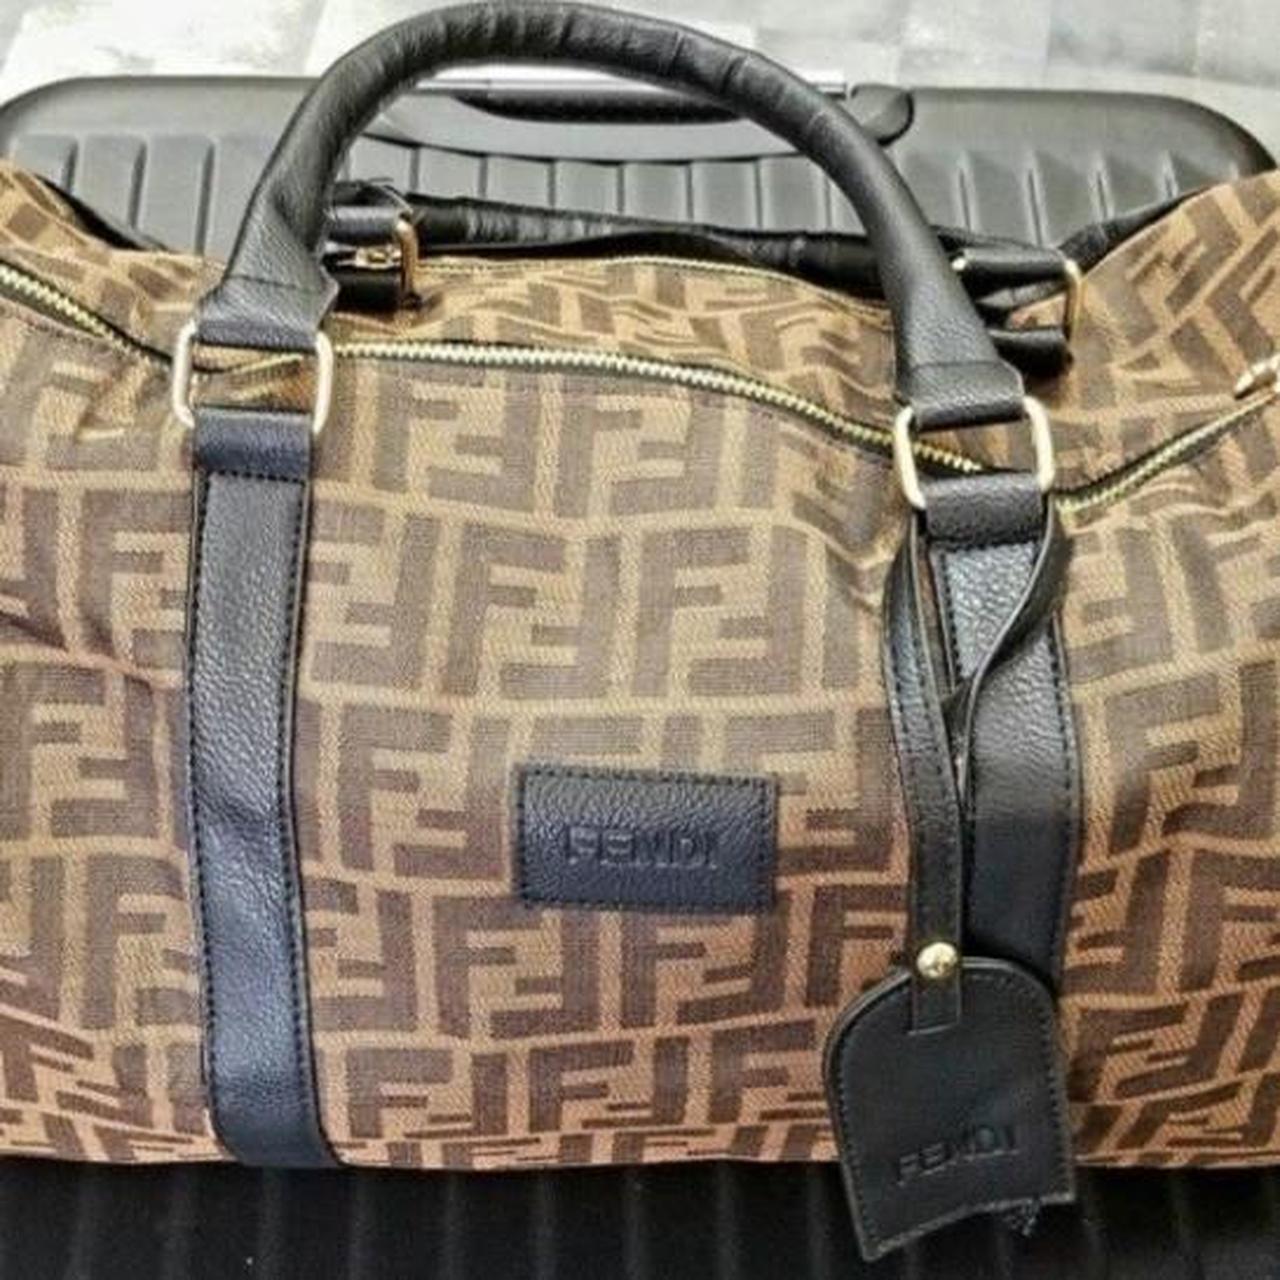 Mid size travel bag - Depop